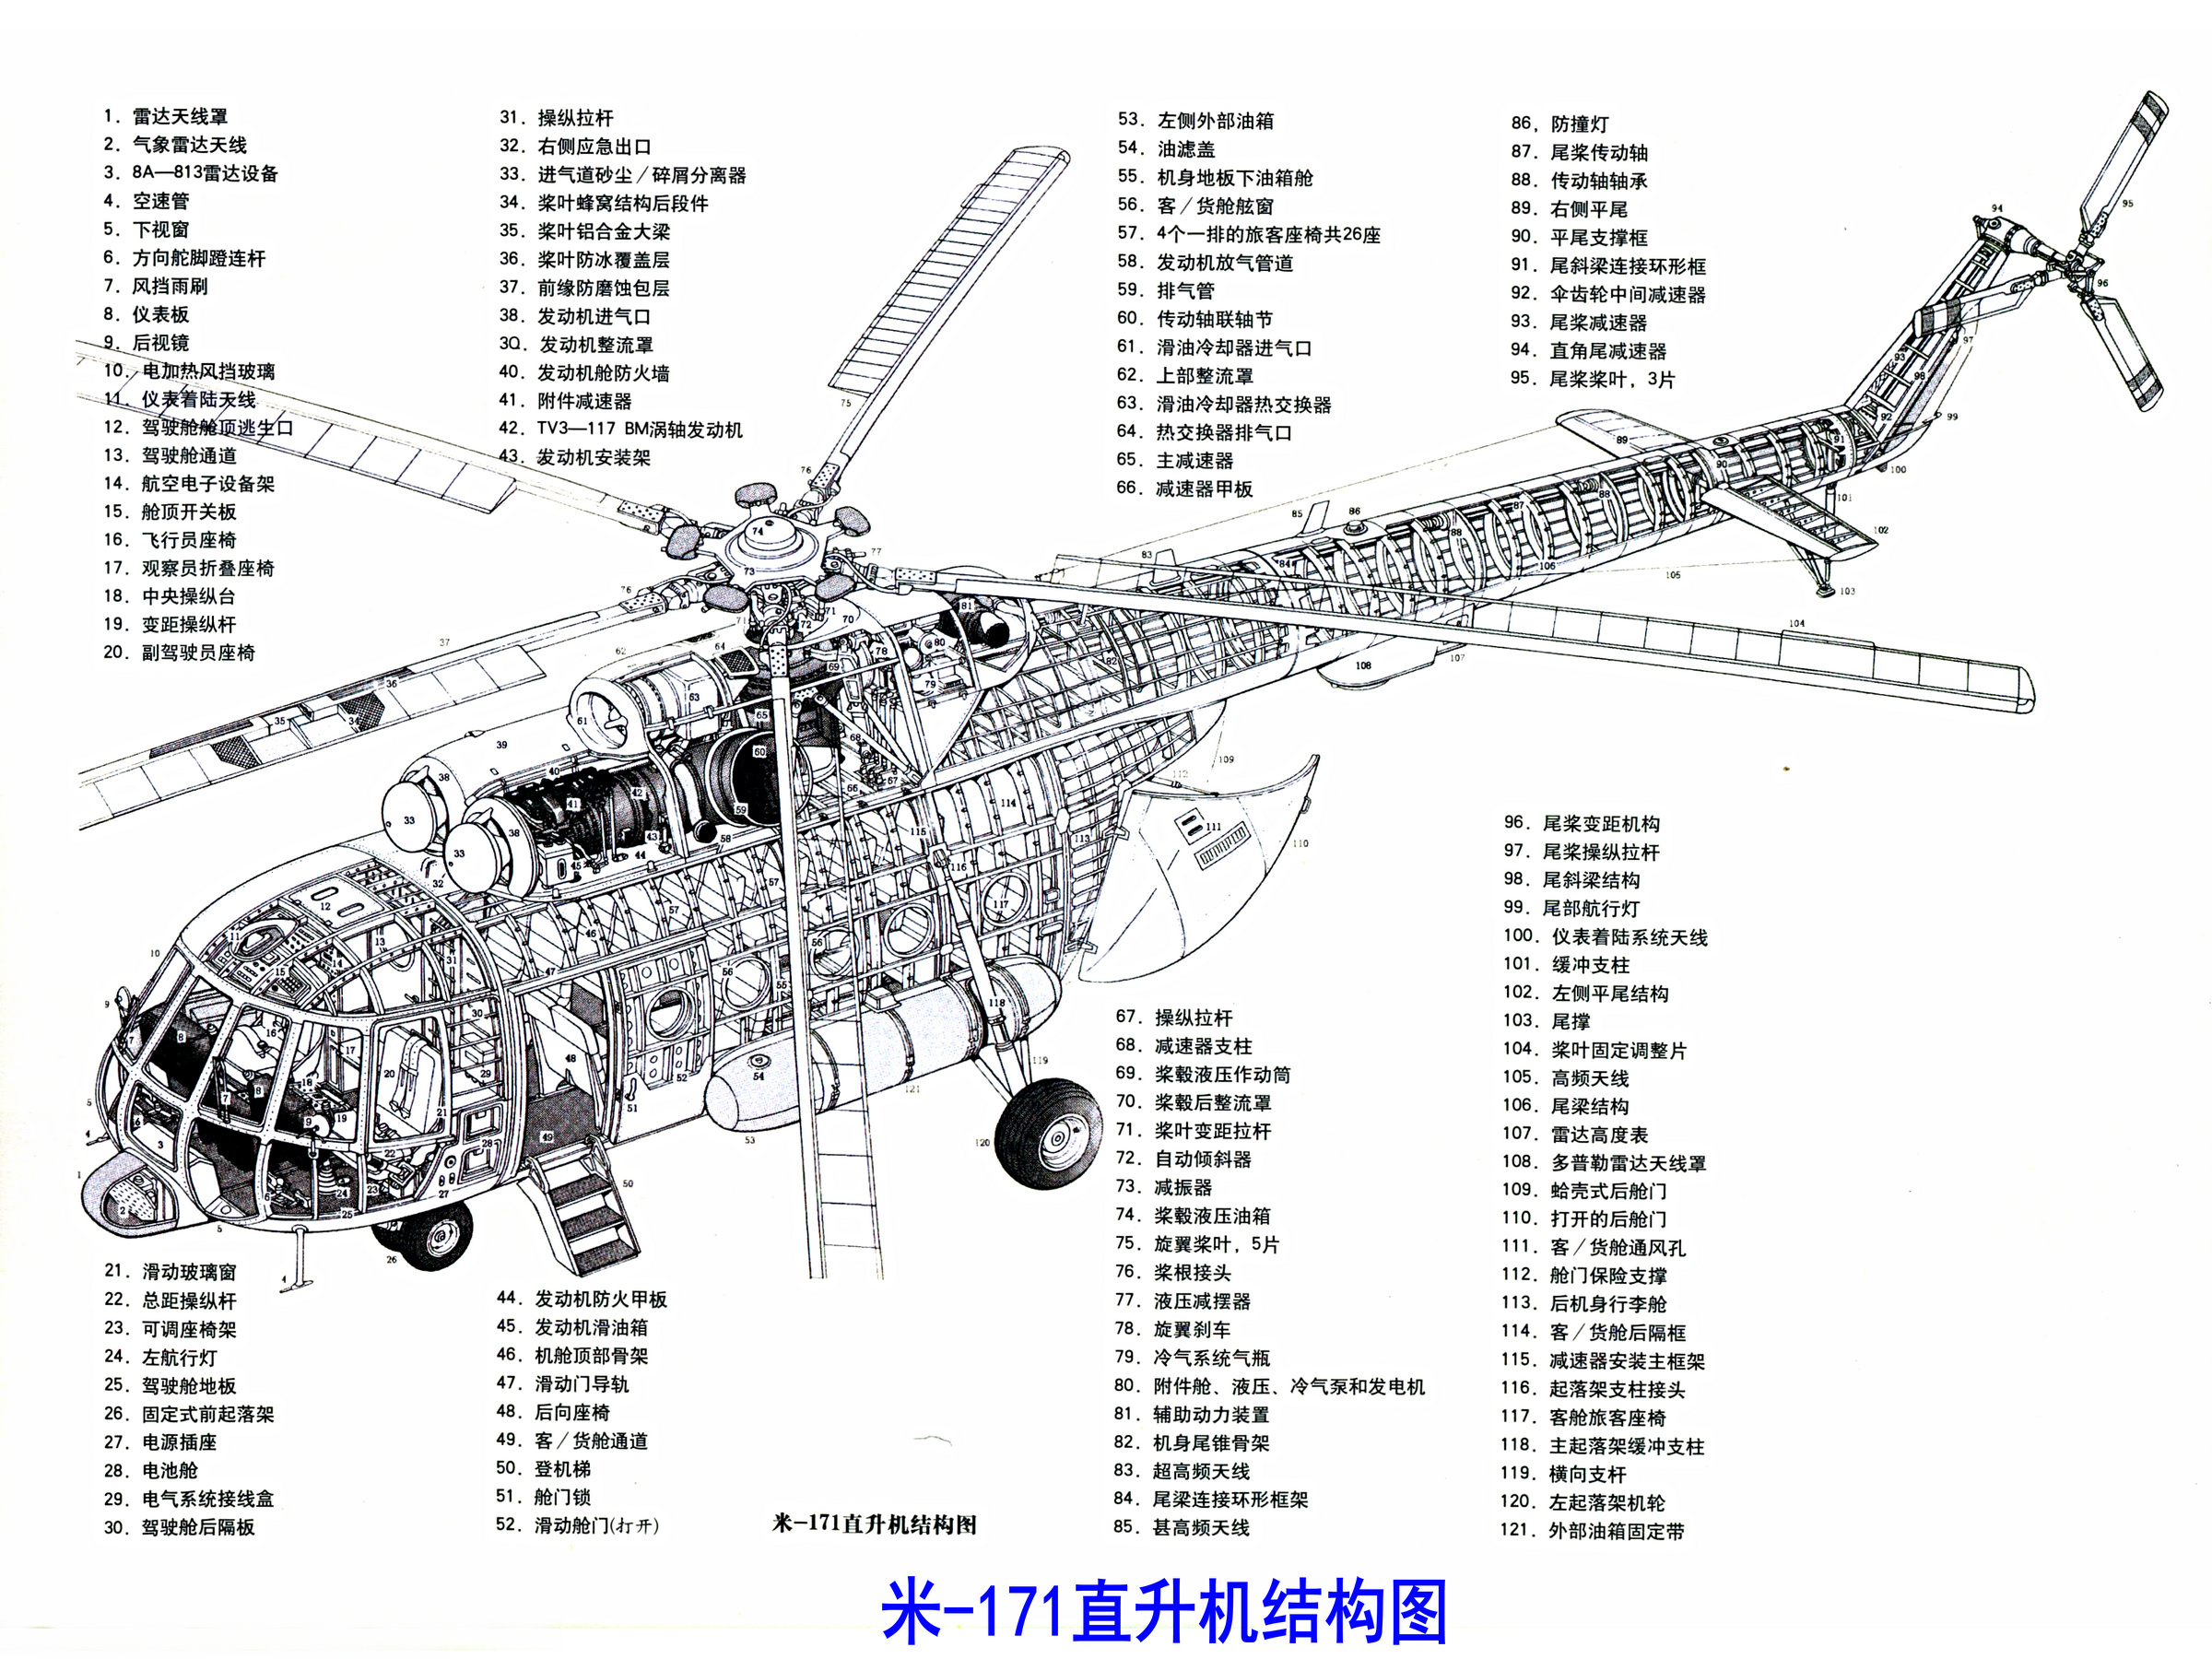 米-171直升機結構圖